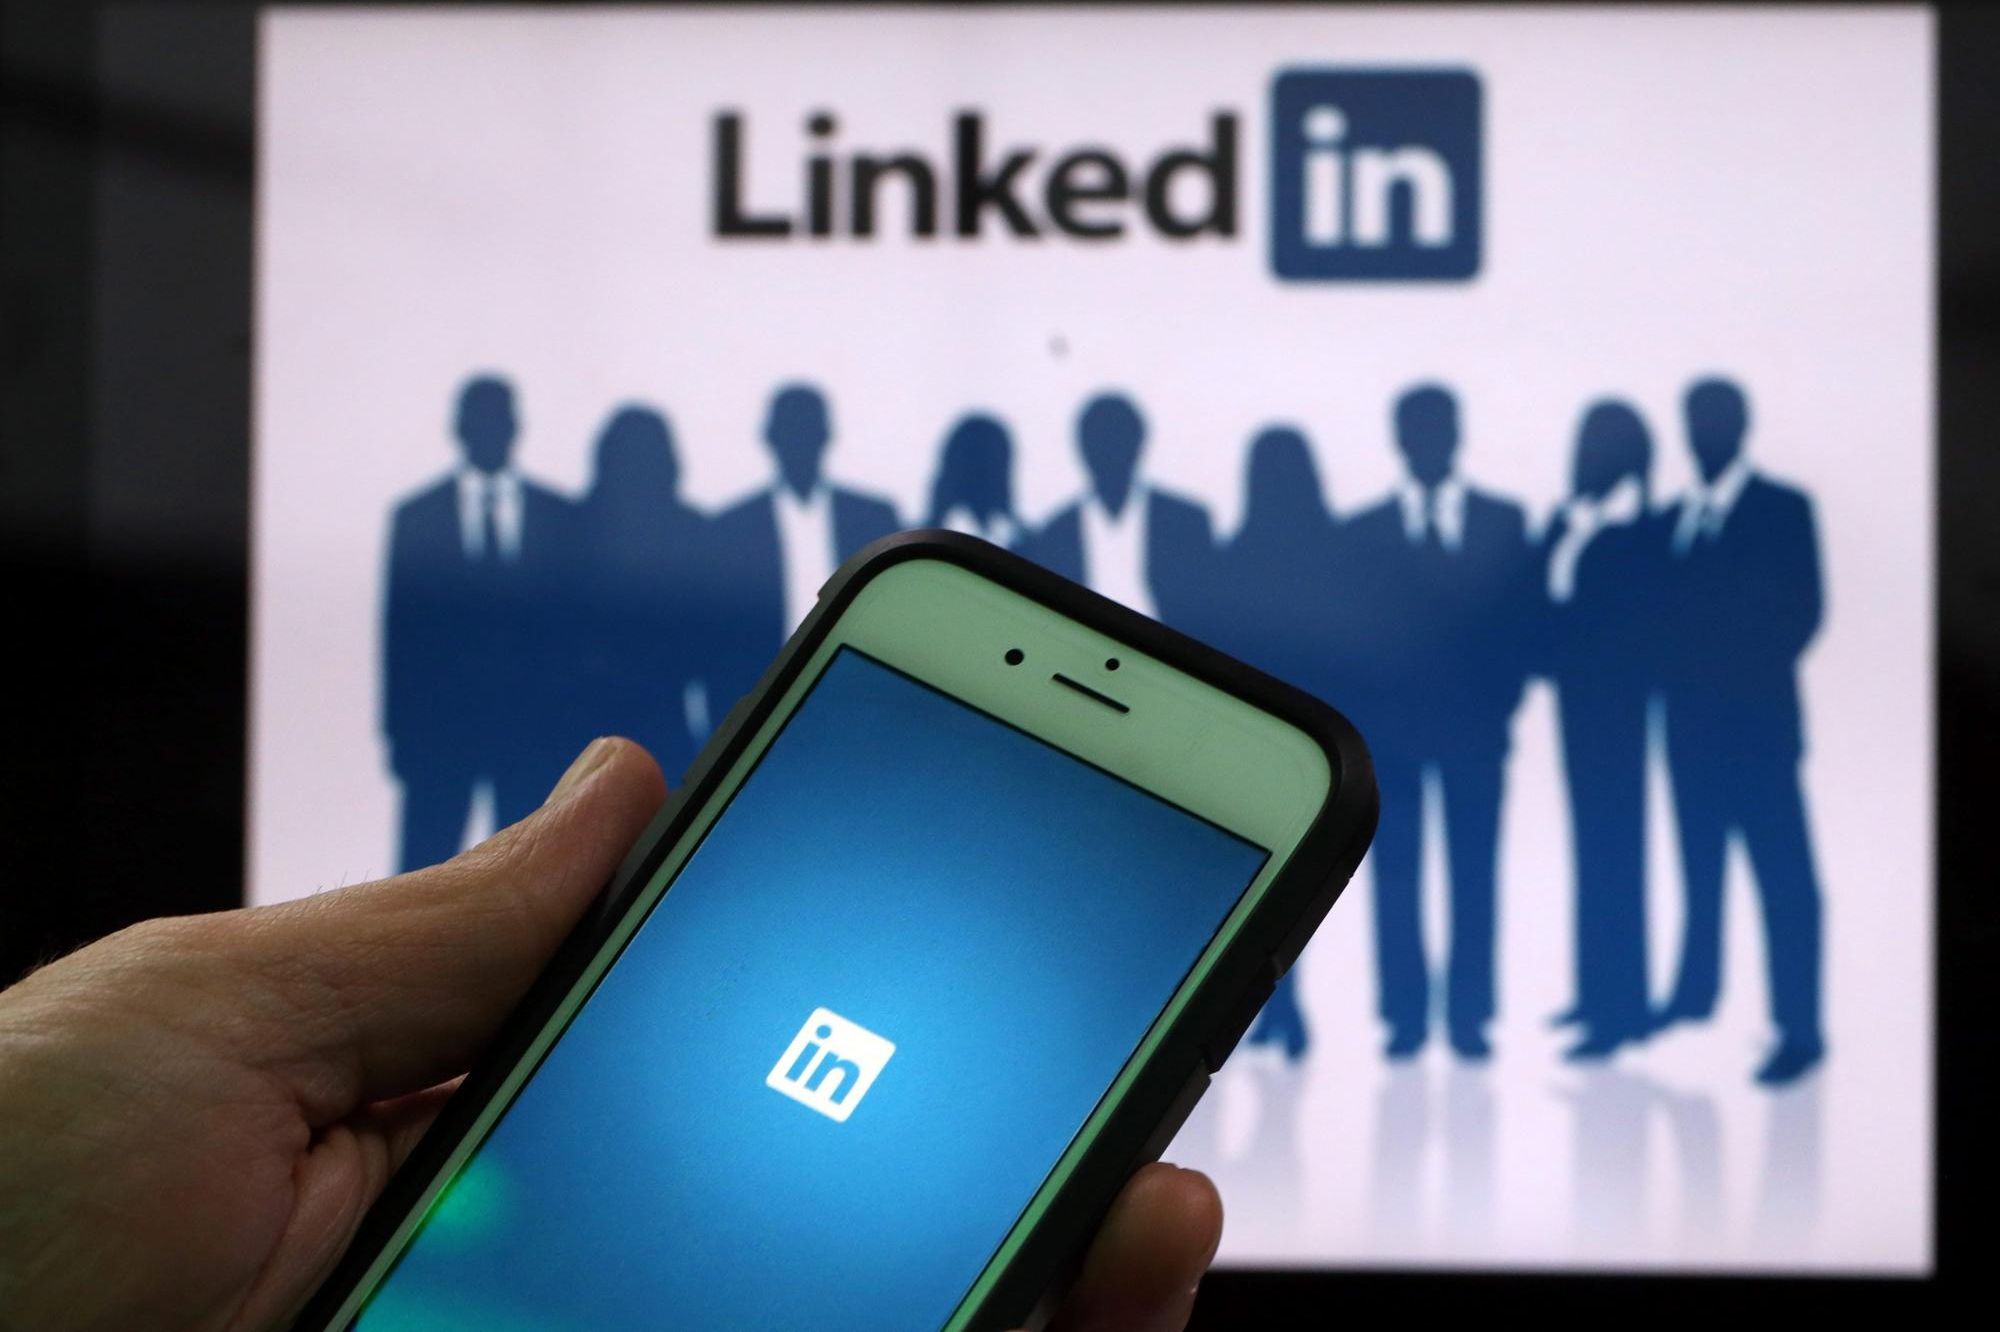 LinkedIn выигрывает контракт на 350 000 евро для поощрения сотрудников центрального банка